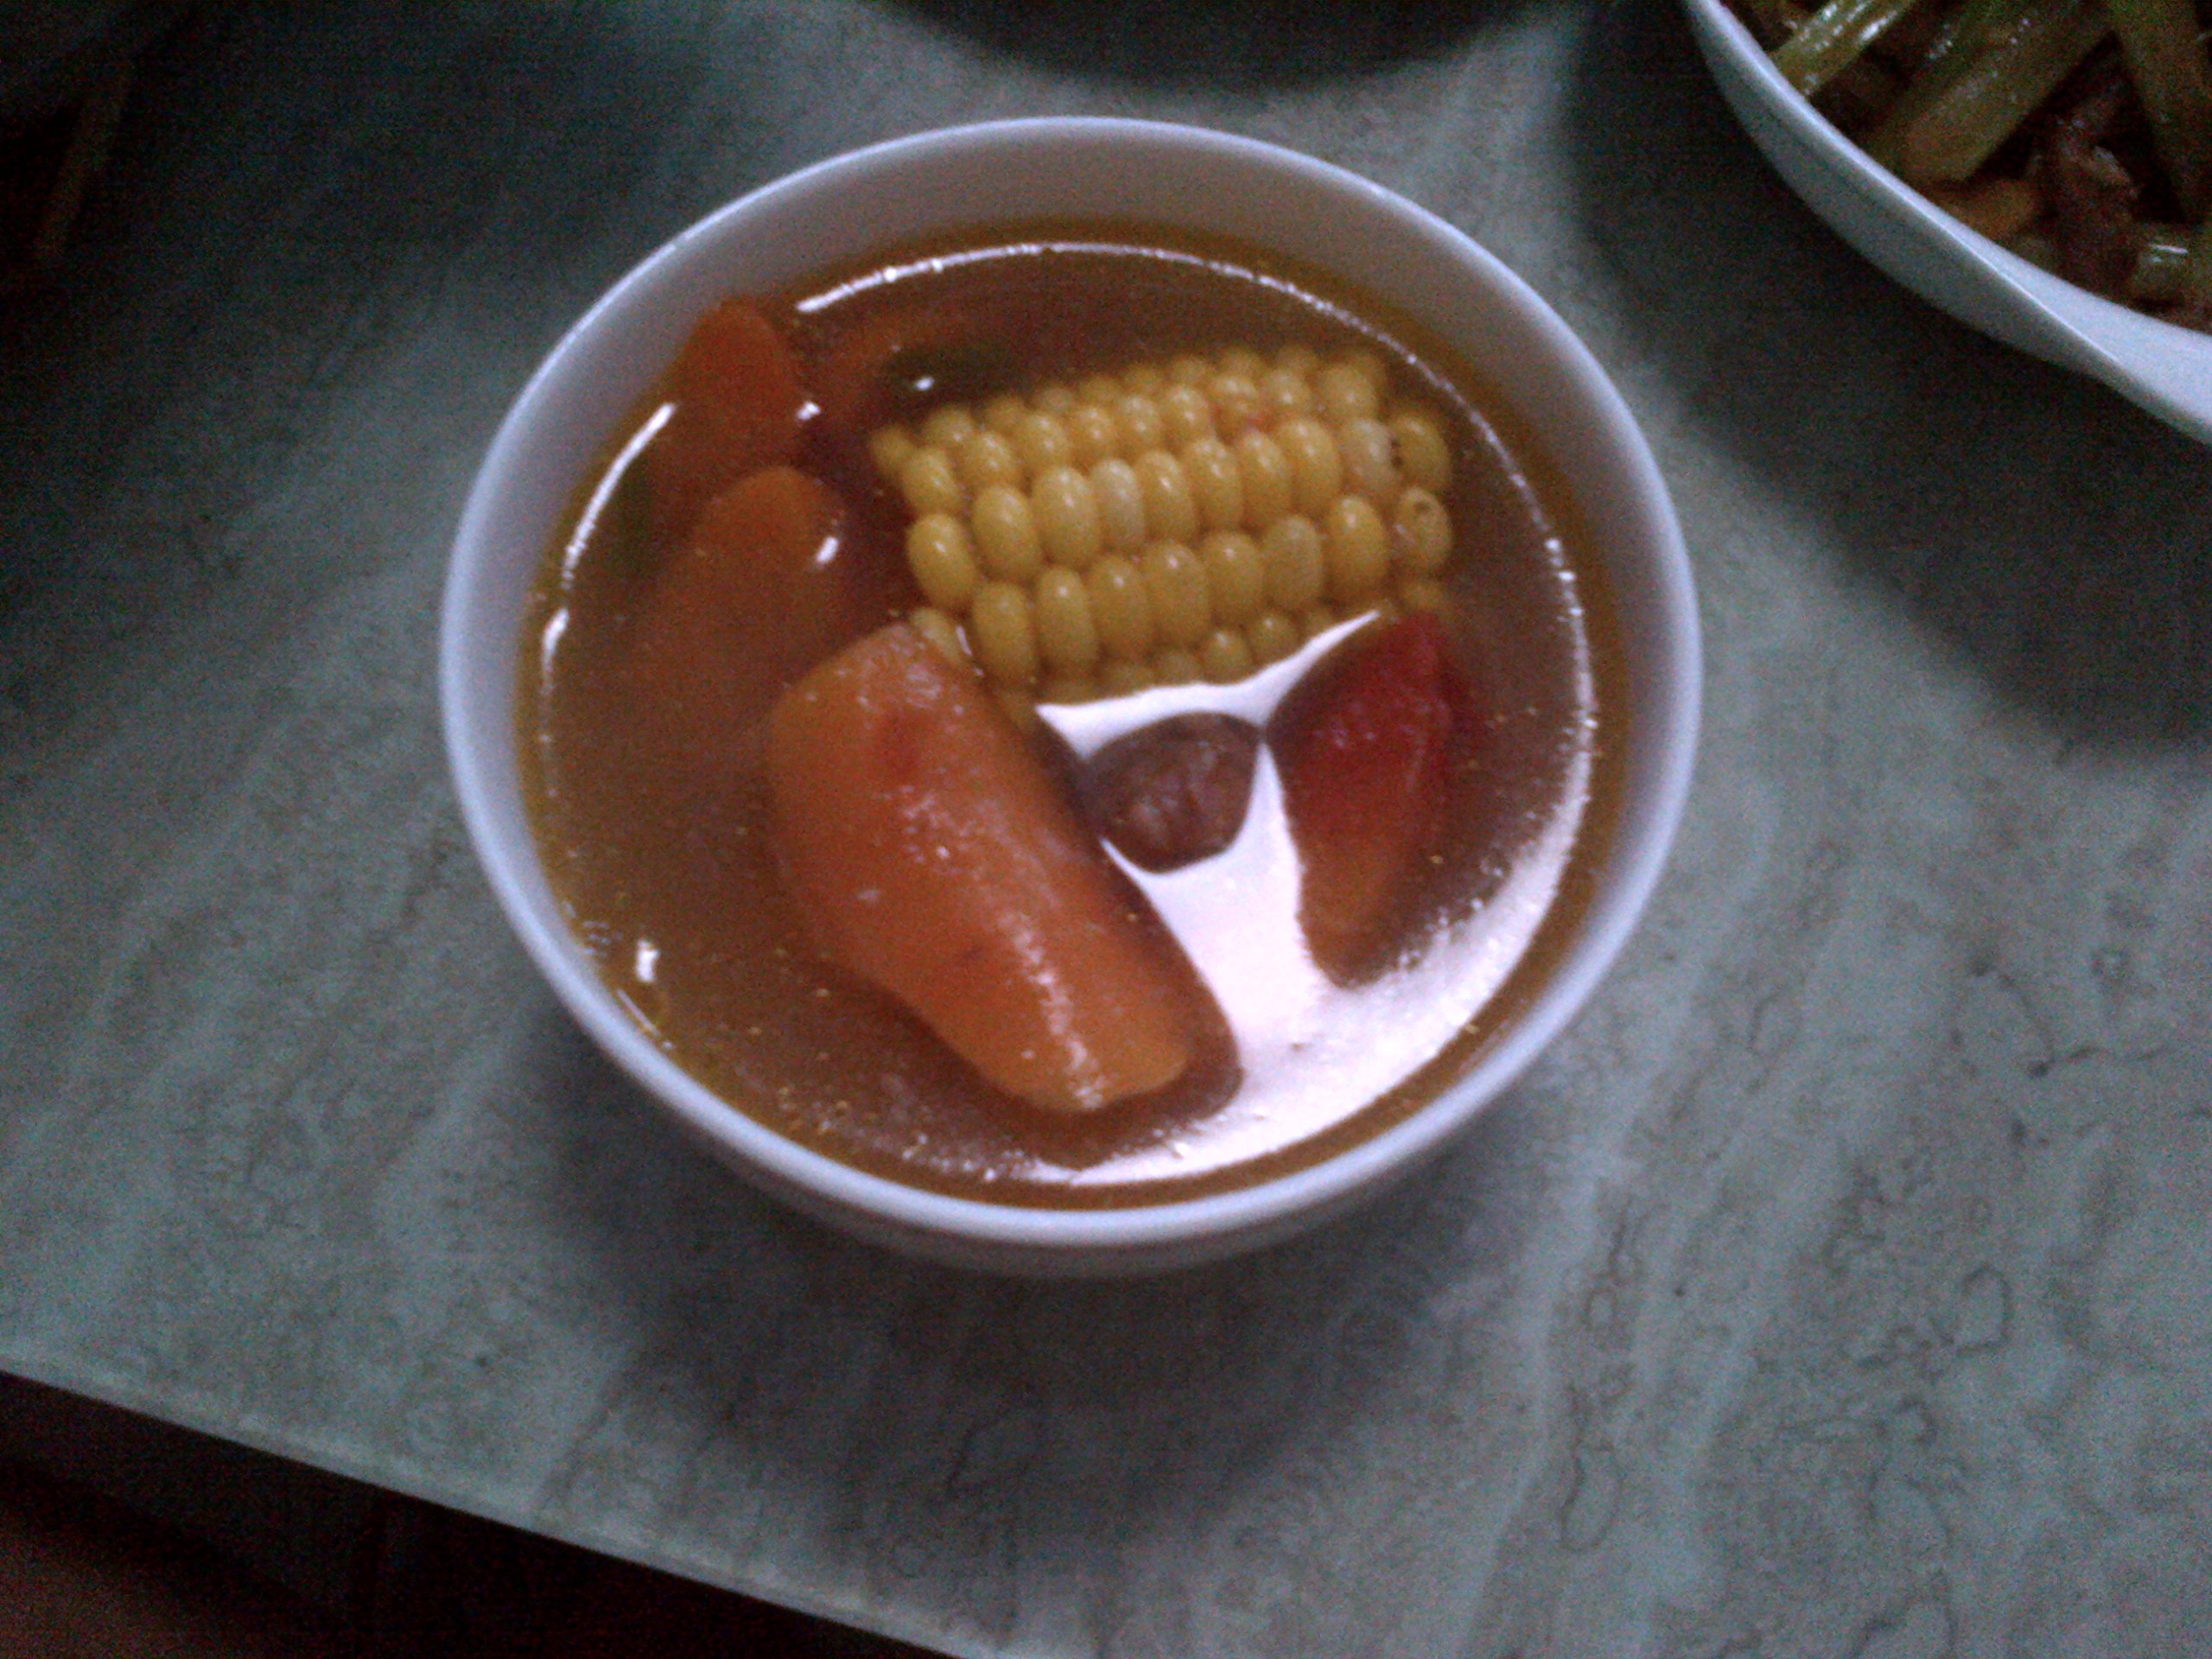 玉米排骨西红柿汤